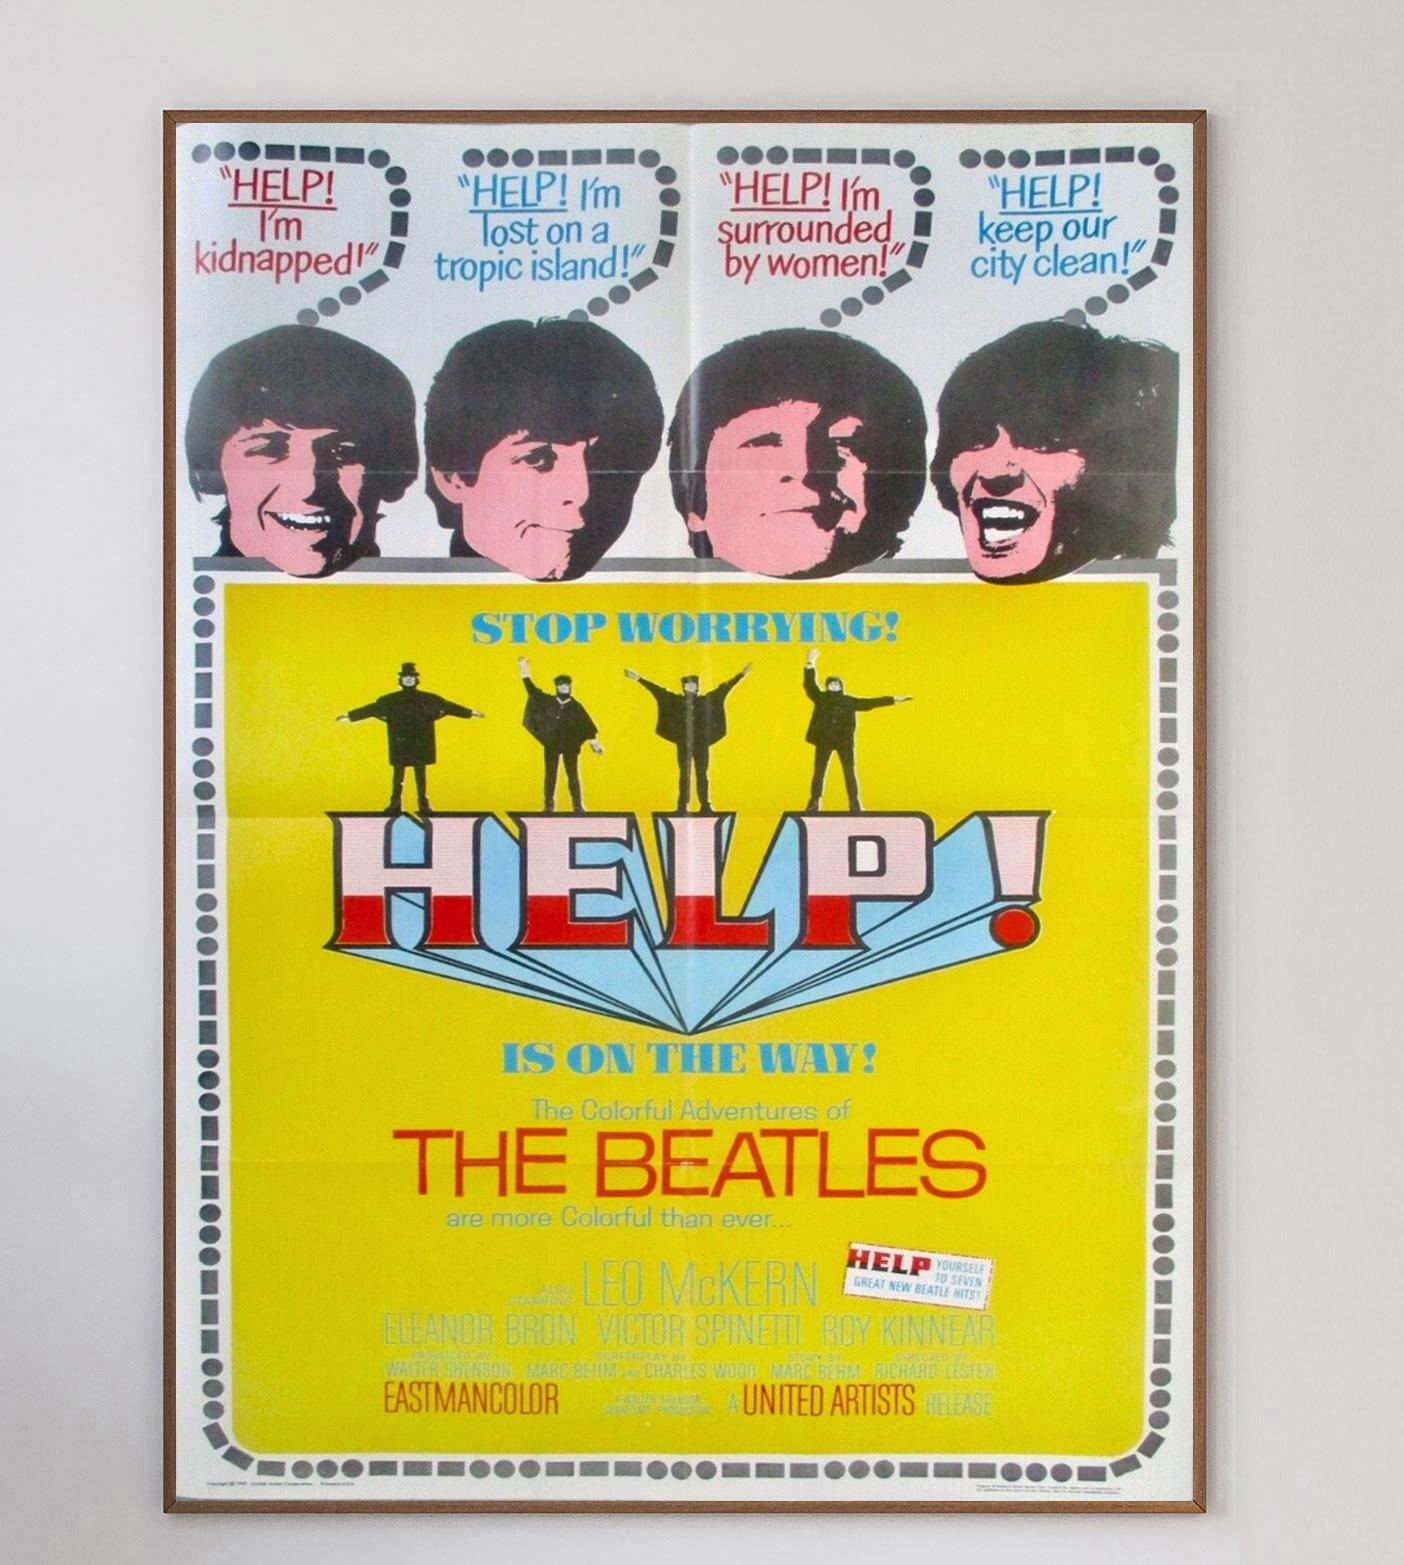 Le deuxième film des Beatles après A Hard Day's Night, Help ! Sorti en 1965 en même temps que le merveilleux album de la bande originale du même nom. Avec des chansons emblématiques telles que 